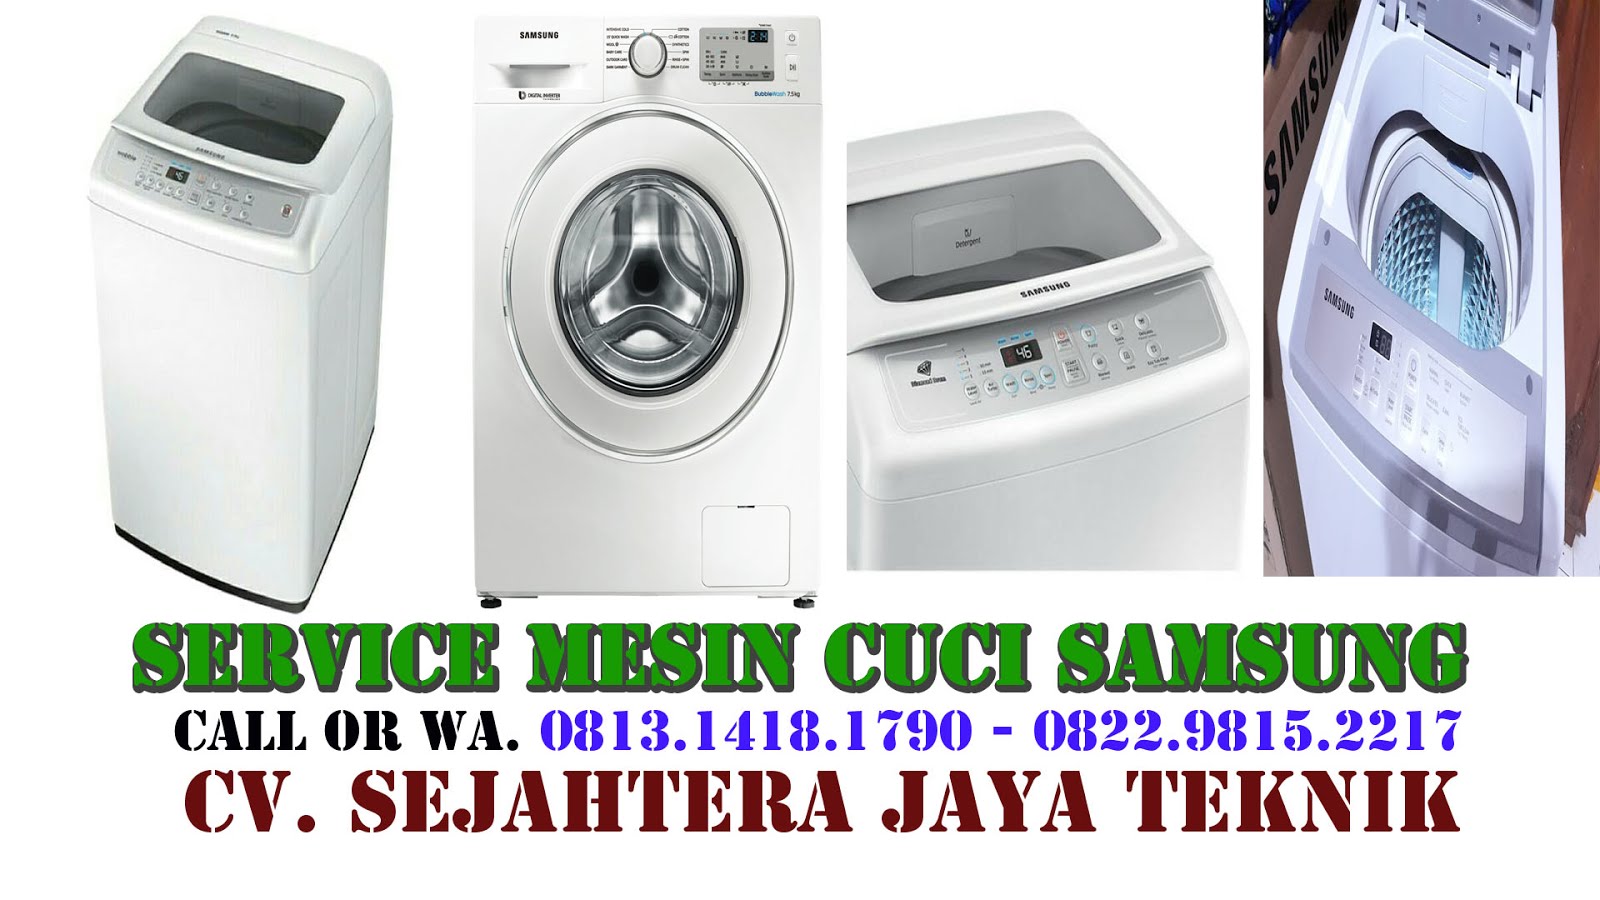 Service Mesin Cuci Samsung di Jakarta Selatan